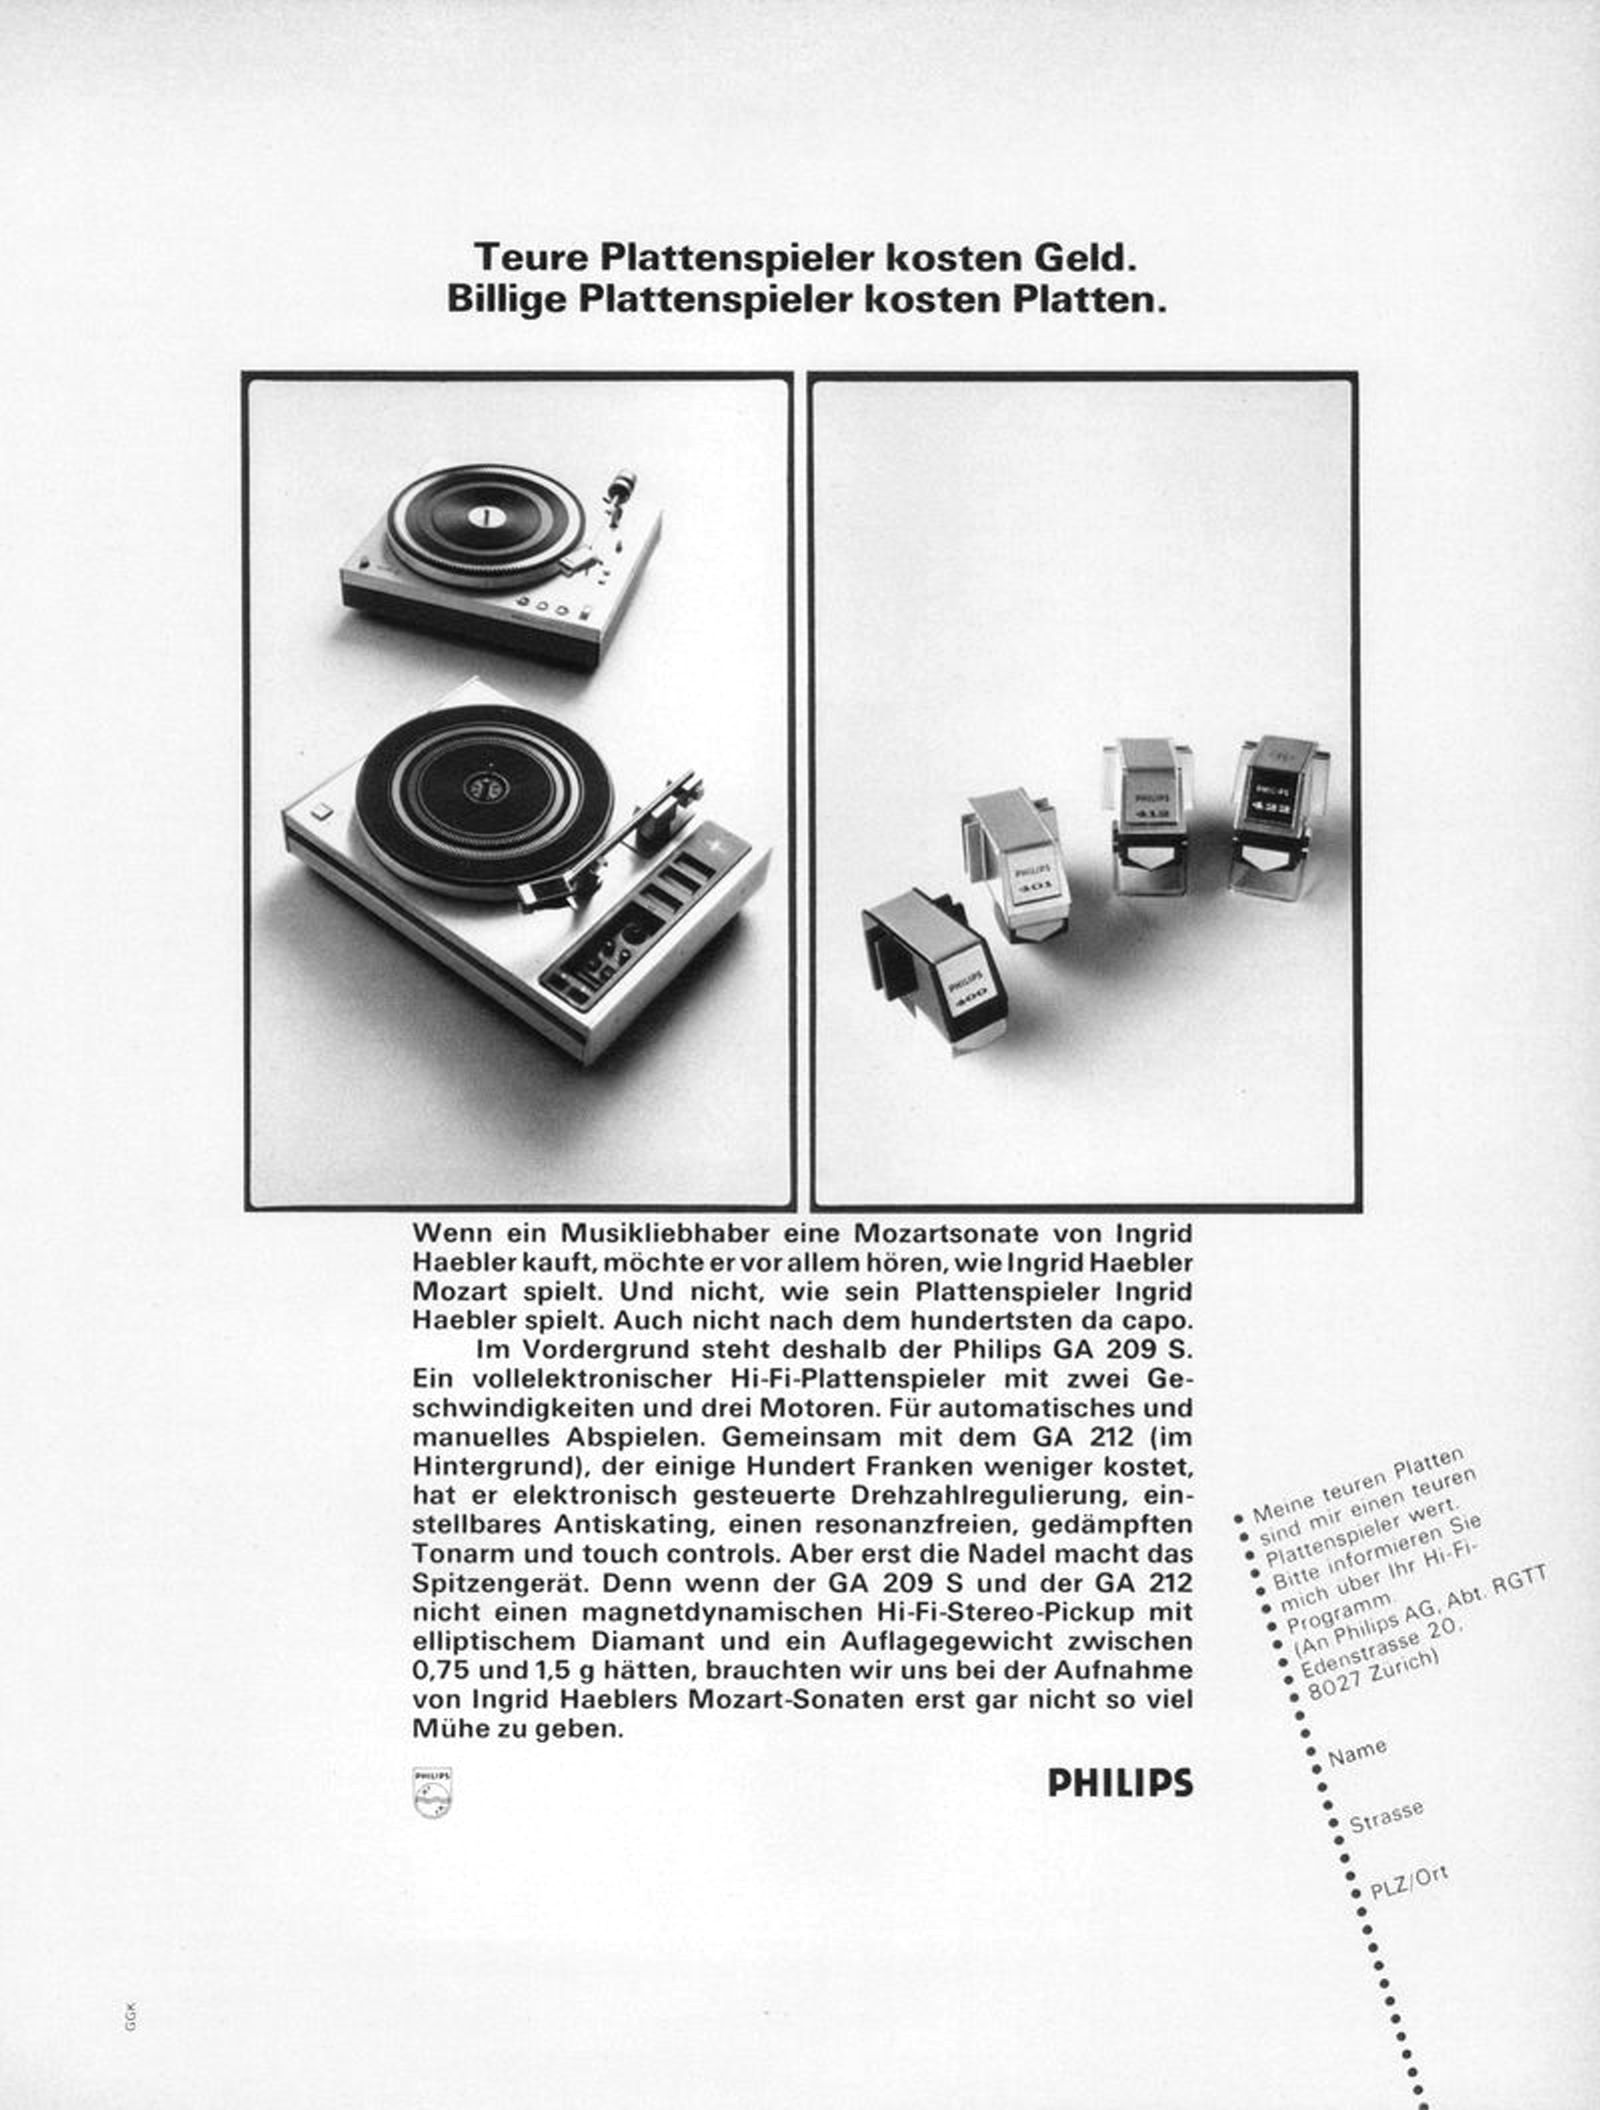 Philips 1975 1.jpg